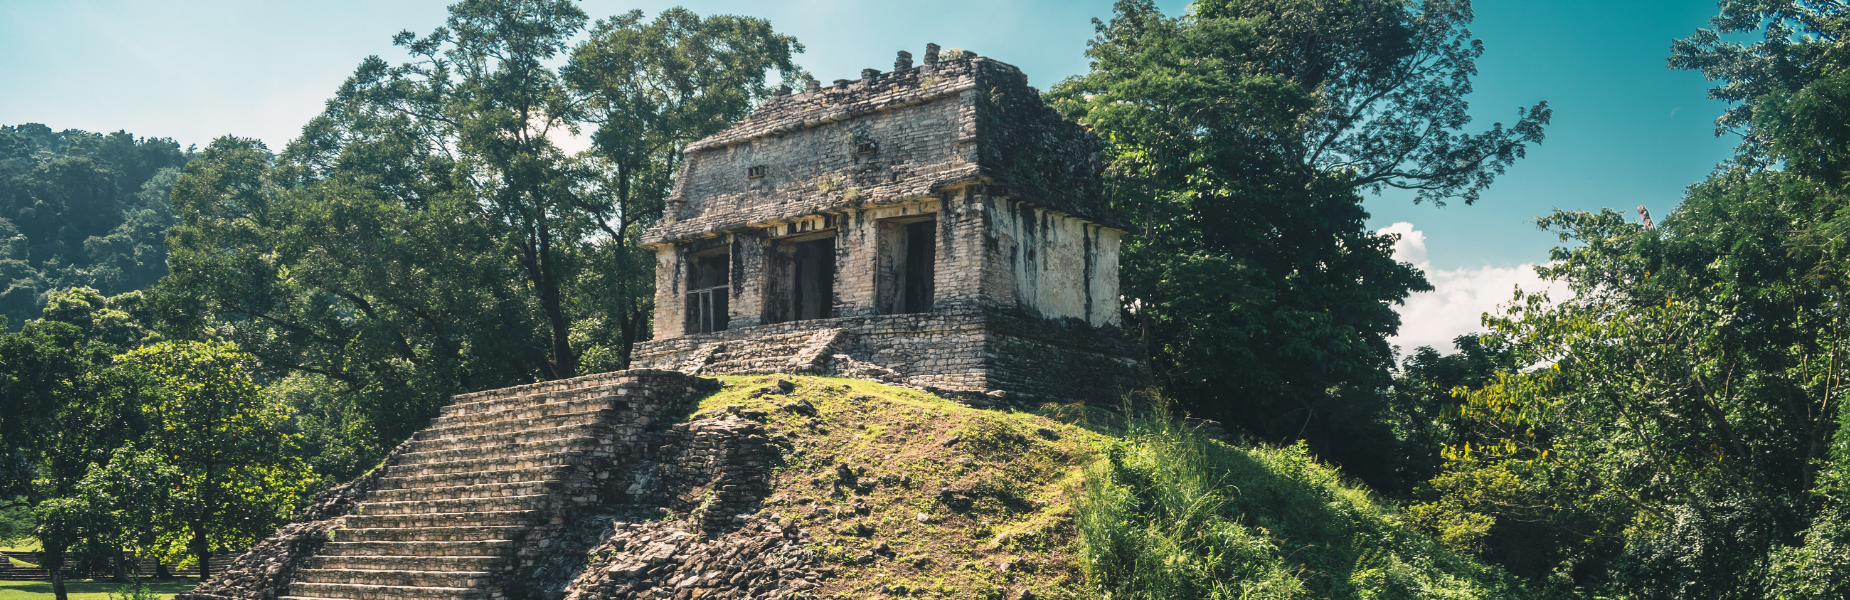 Mexico maya ruins